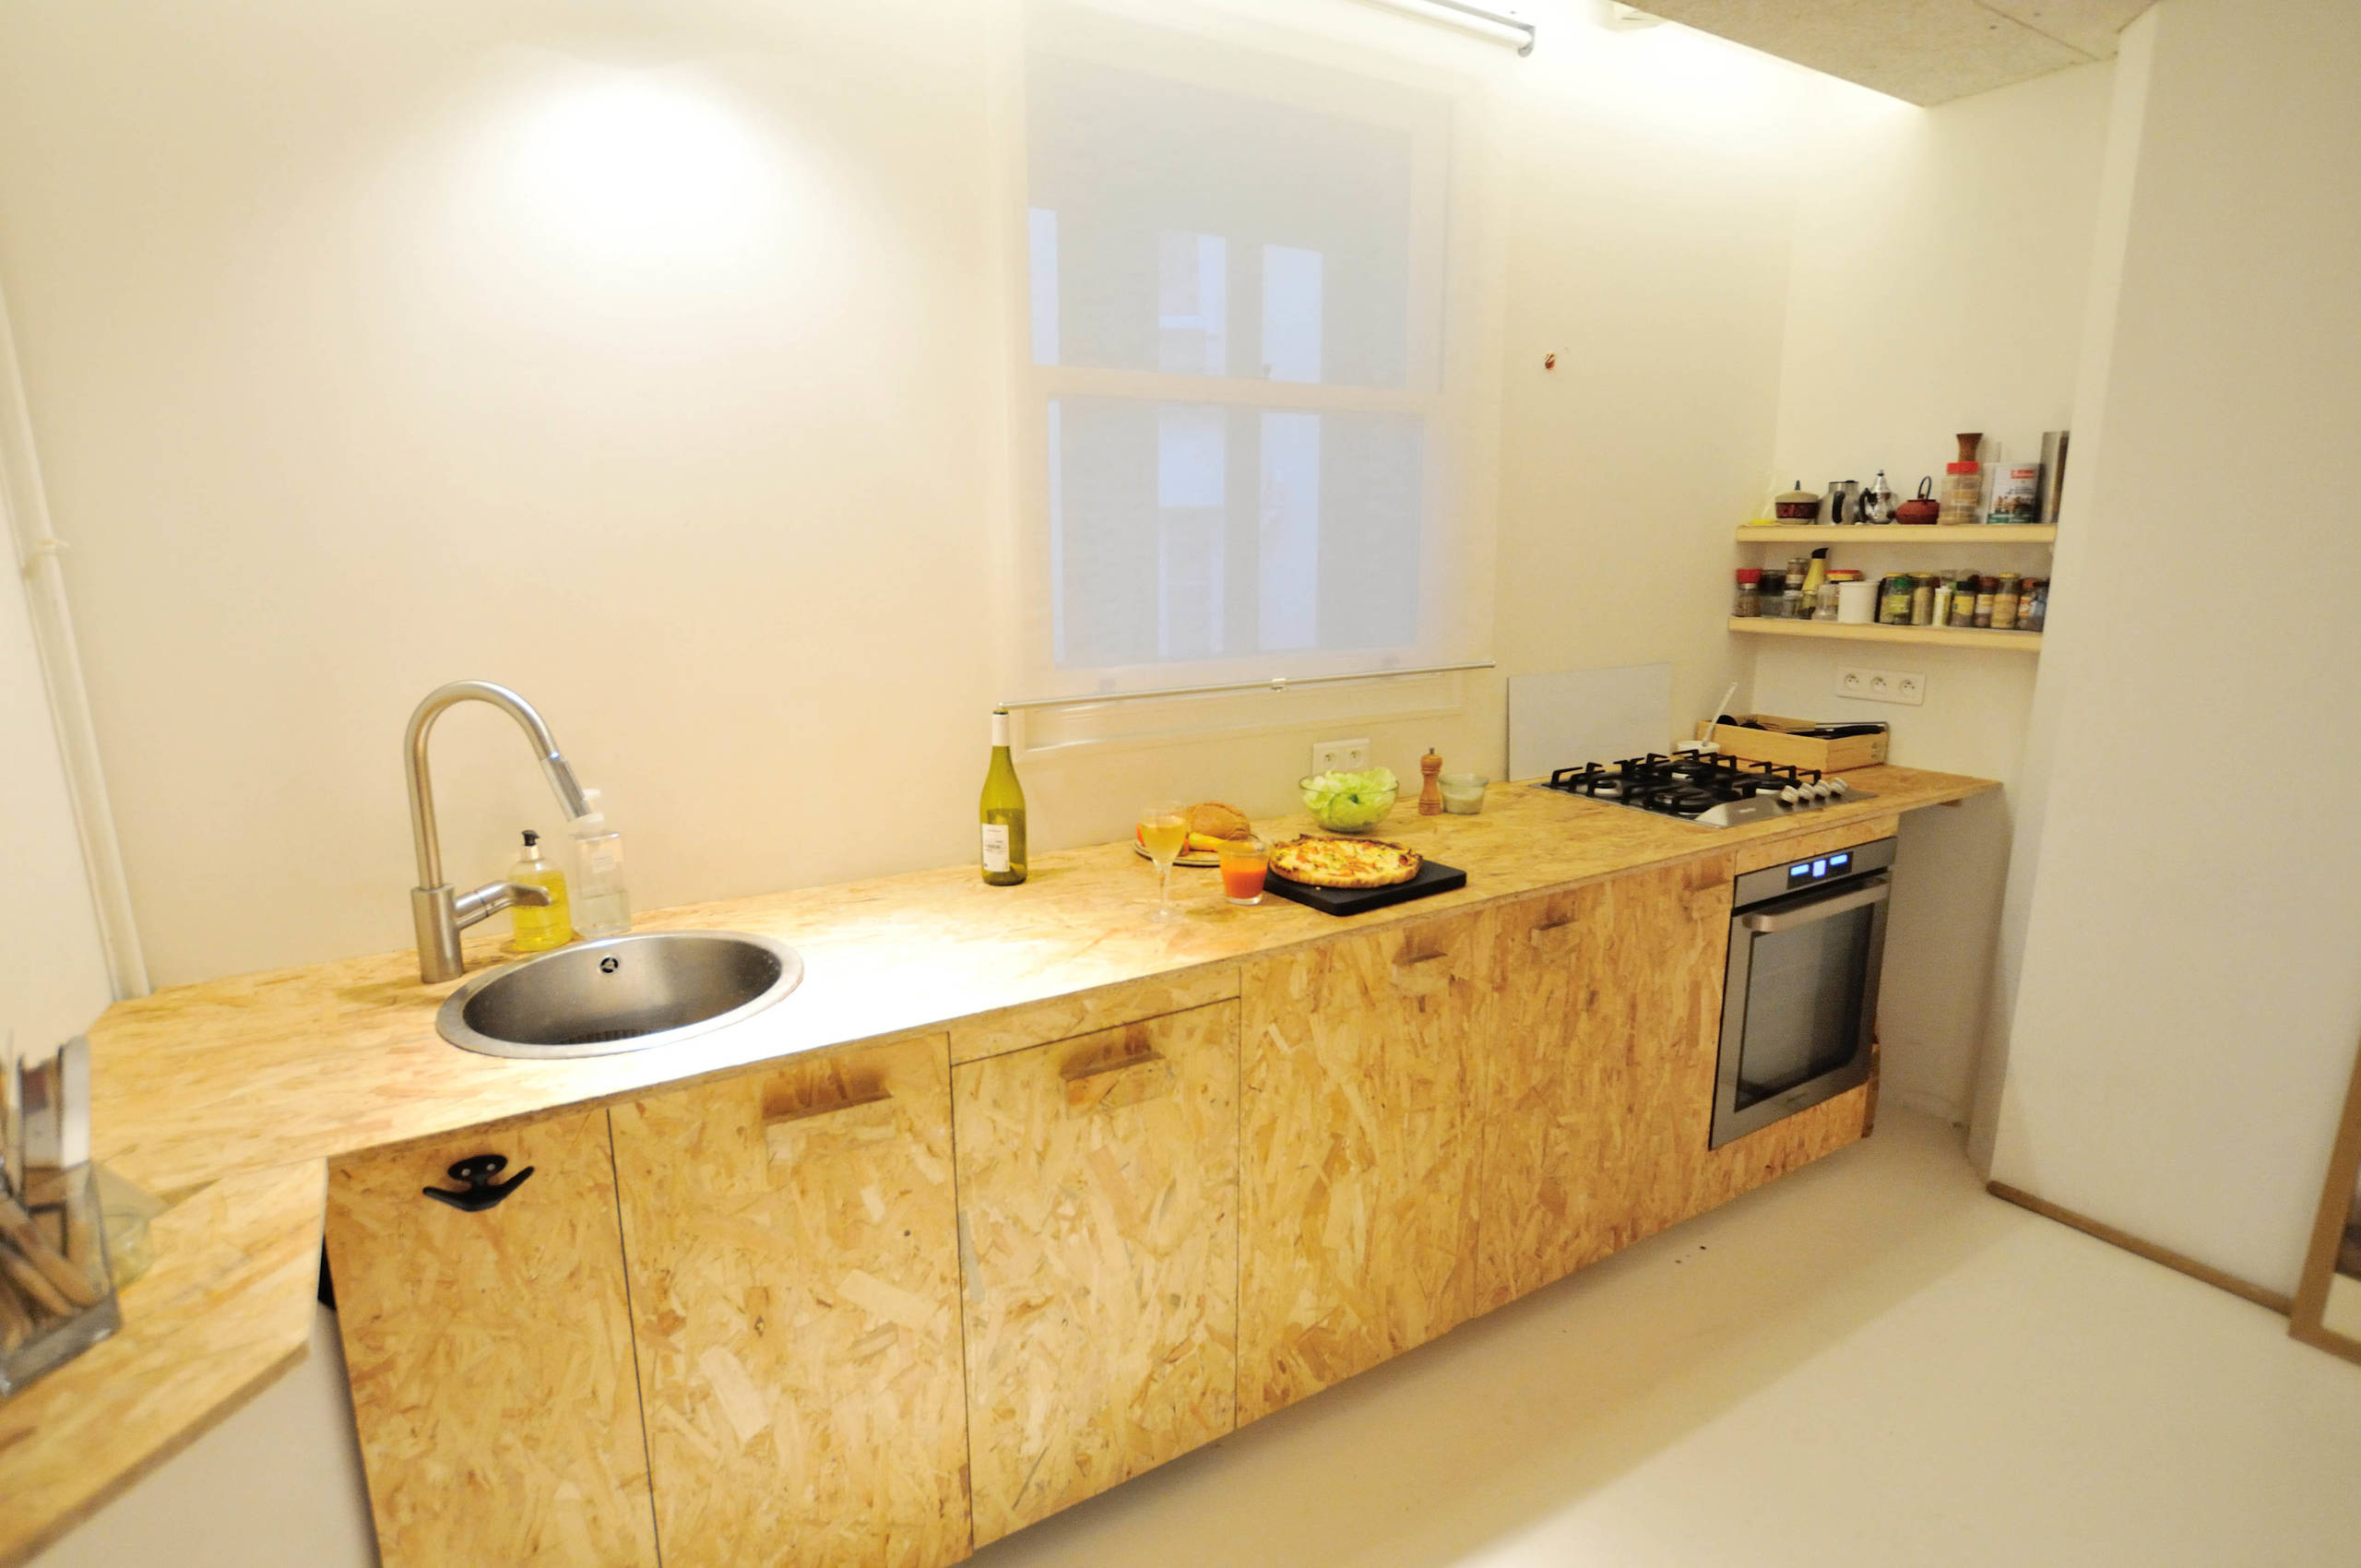 Cuisine en OSB sur meubles ikéa adaptés - Industrial - Kitchen - Paris - by  Quasiment | Houzz